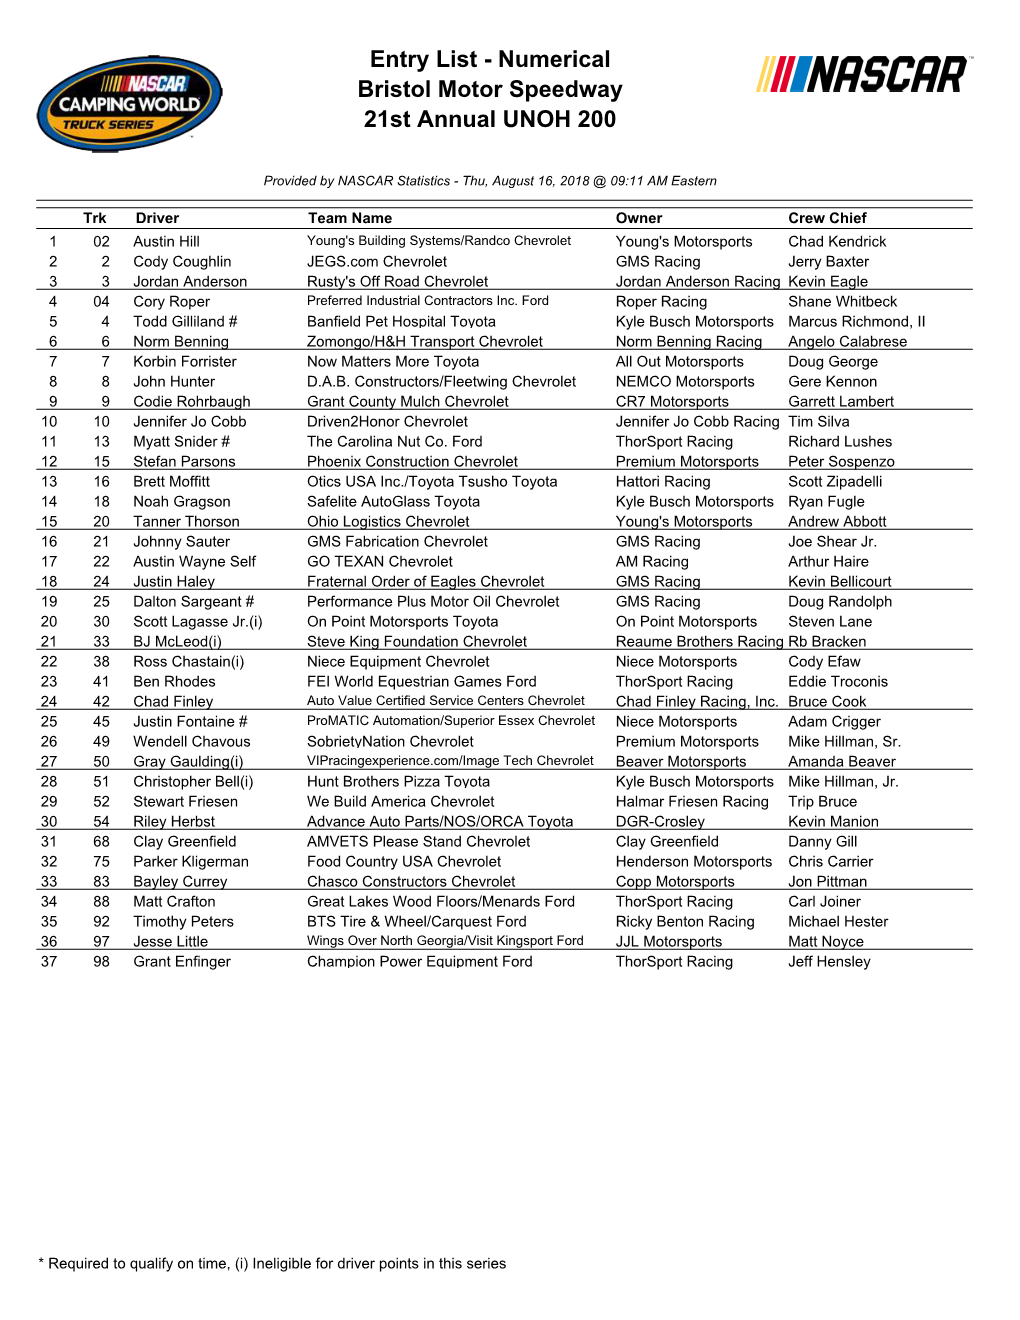 Entry List - Numerical Bristol Motor Speedway 21St Annual UNOH 200